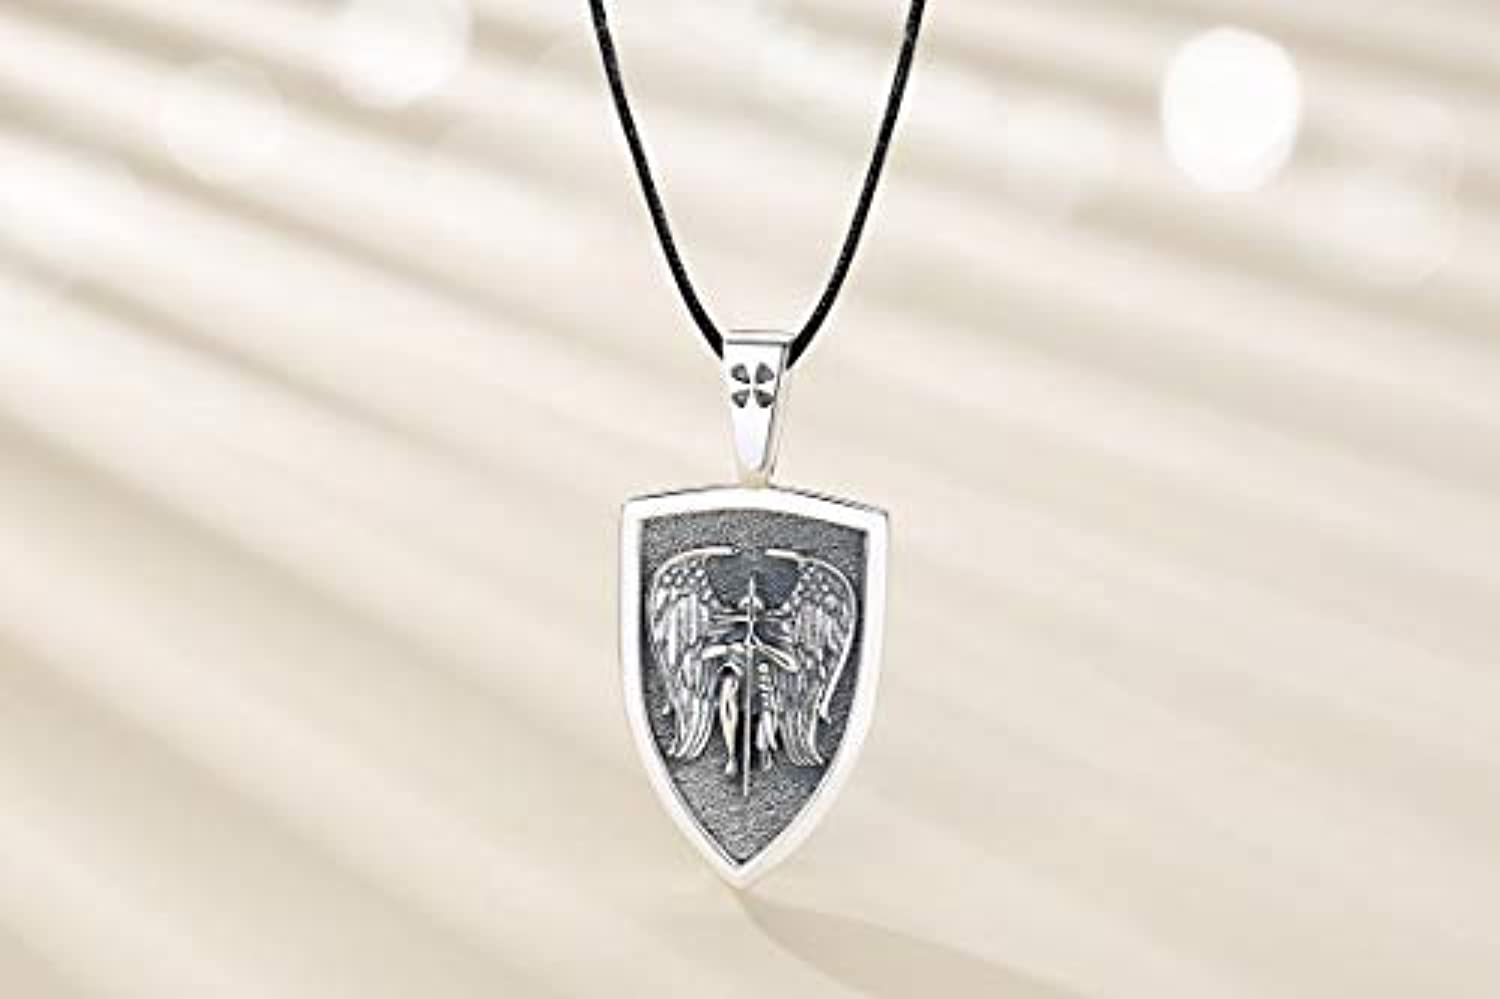 LONAGO Saint Michael Medal Necklace Sterling Silver Archangel St Michael  Medallion Pendant Necklaces Gift for Men | Amazon.com